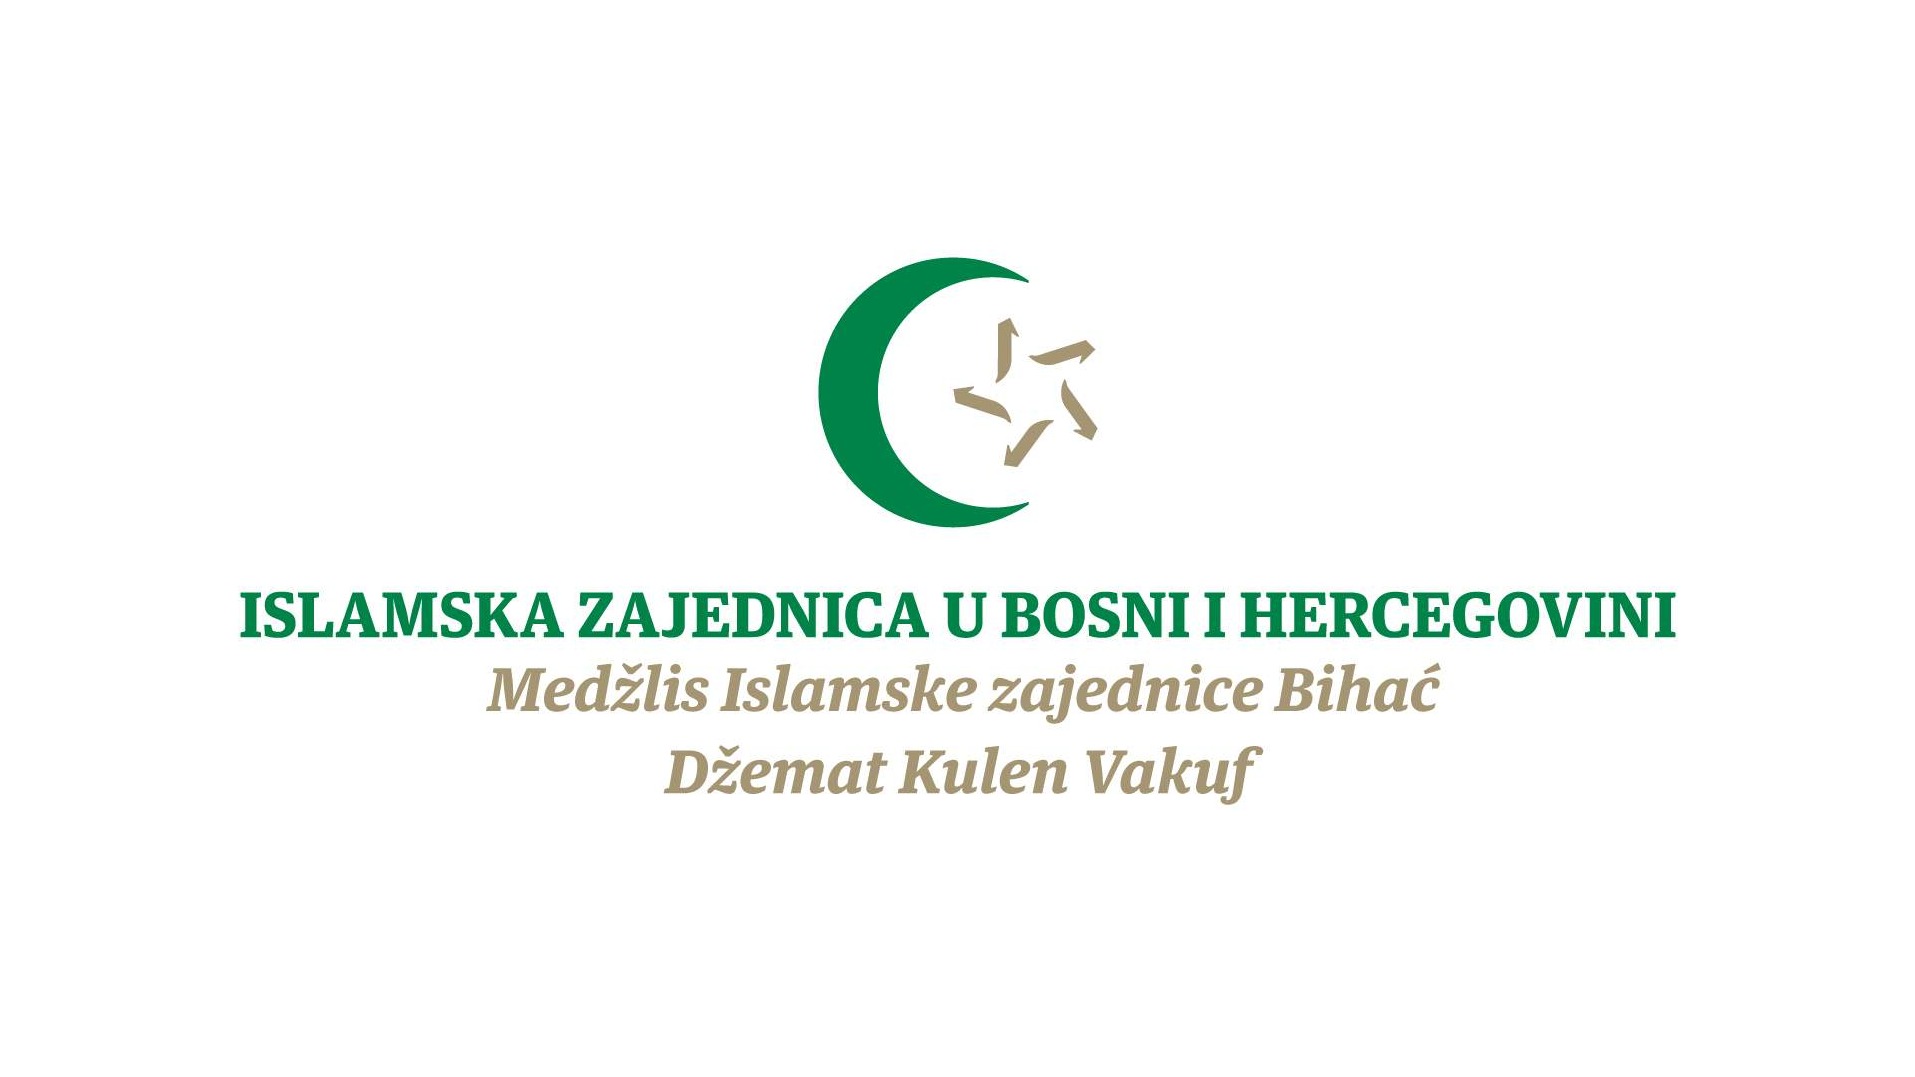 MIZ Bihać: Konkurs a prijem imama, hatiba i muallima u džematu Kulen Vakuf